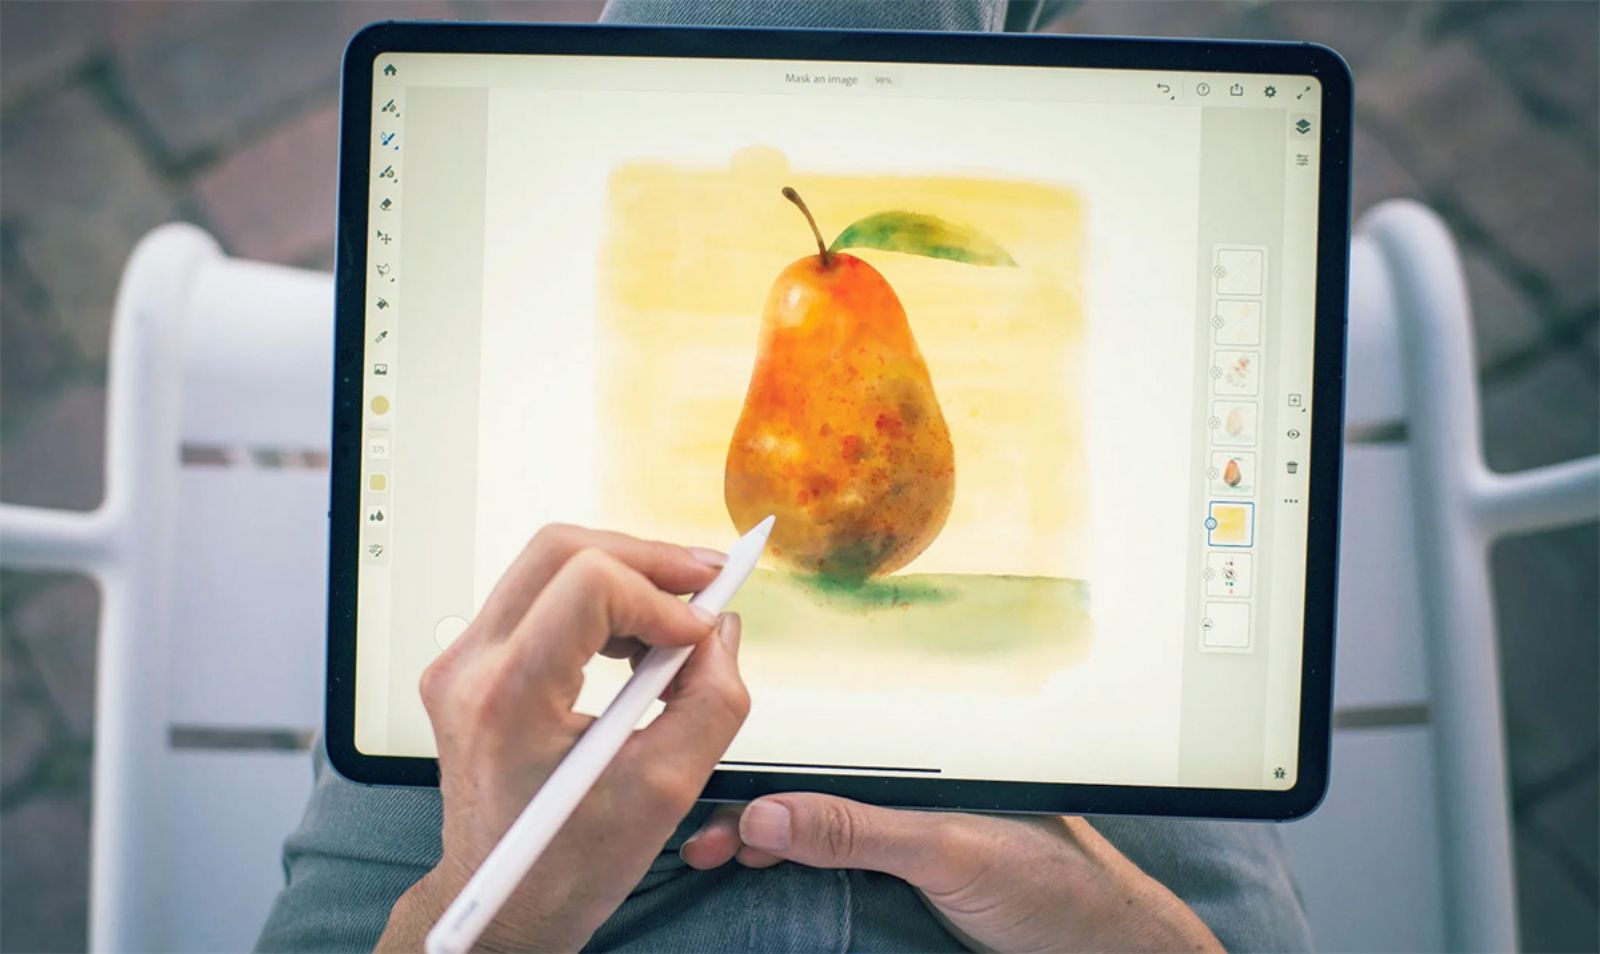 15 cây bút cho Vẽ 3d trên iPad đẳng cấp